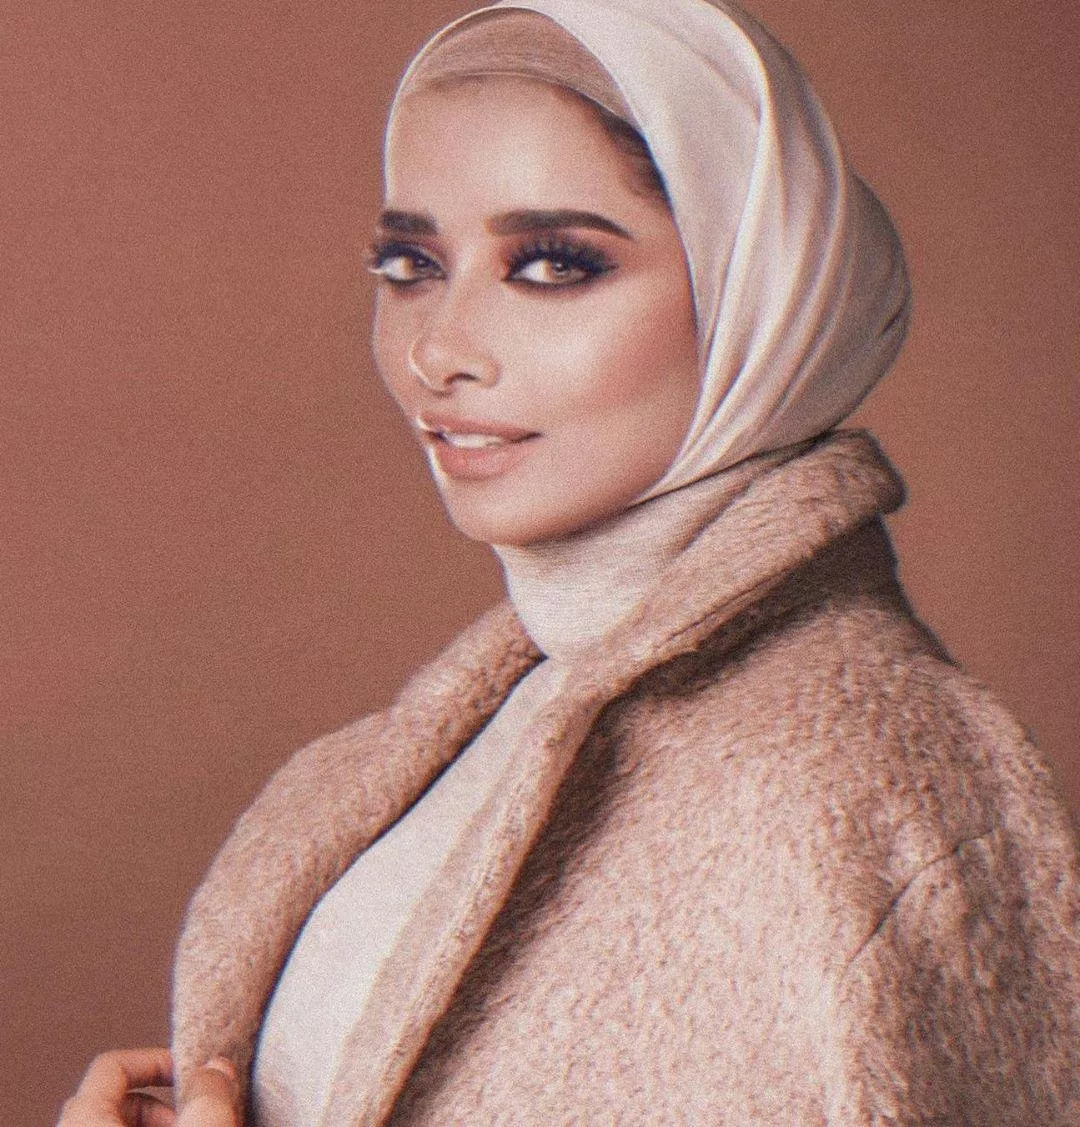 نجمات غير محجبات استقبلن رمضان 2020 بإطلالات استثنائية بالحجاب